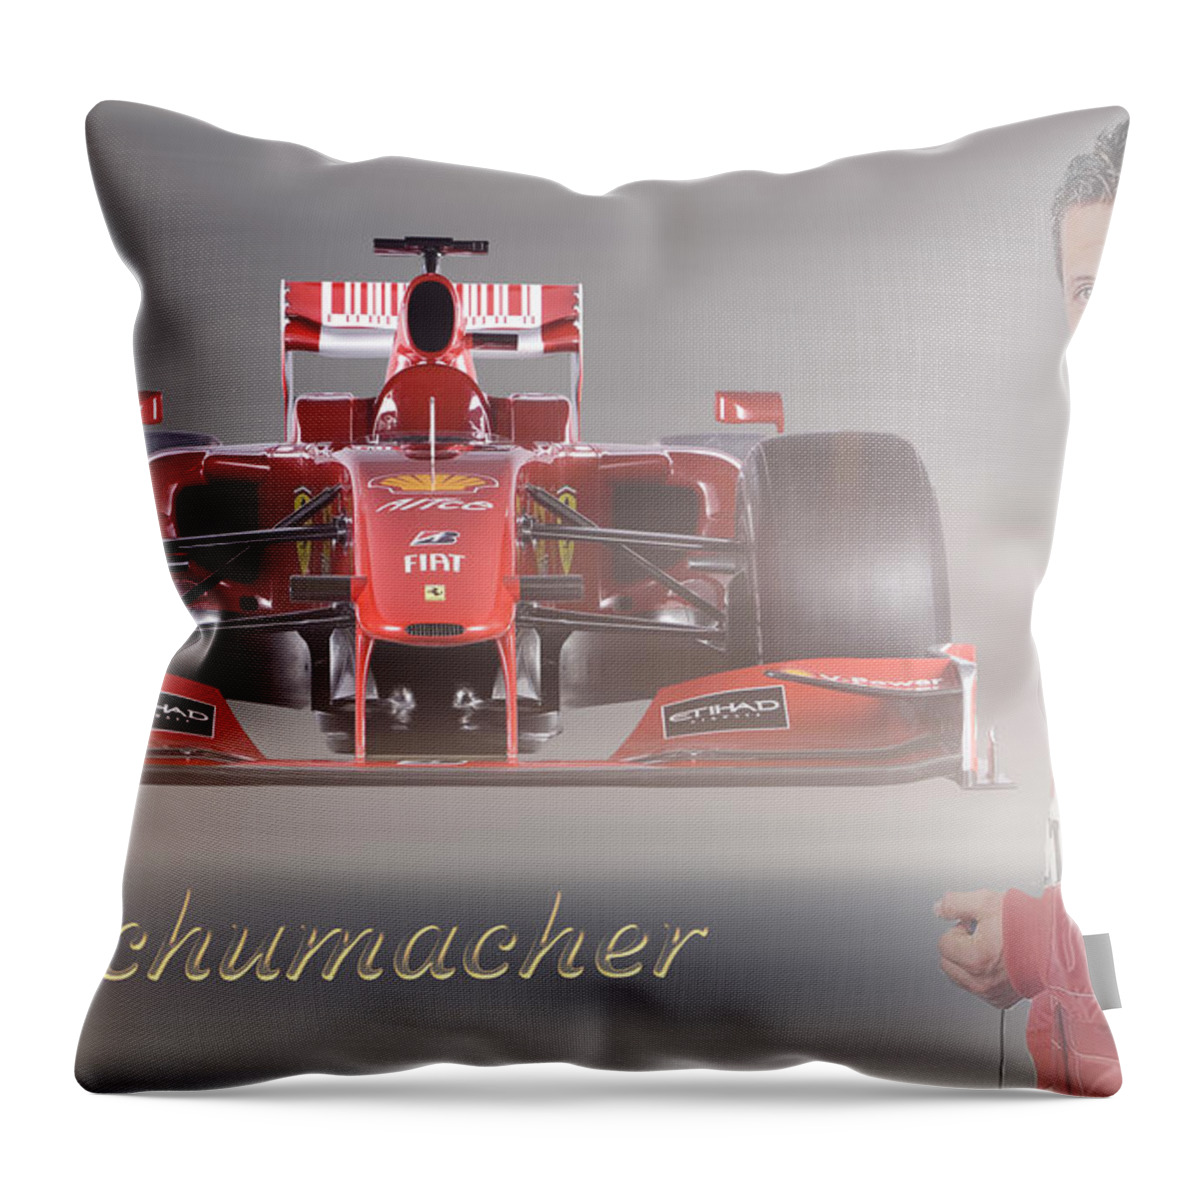 Michael Schumacher Throw Pillow featuring the mixed media Michael Schumacher by Smart Aviation